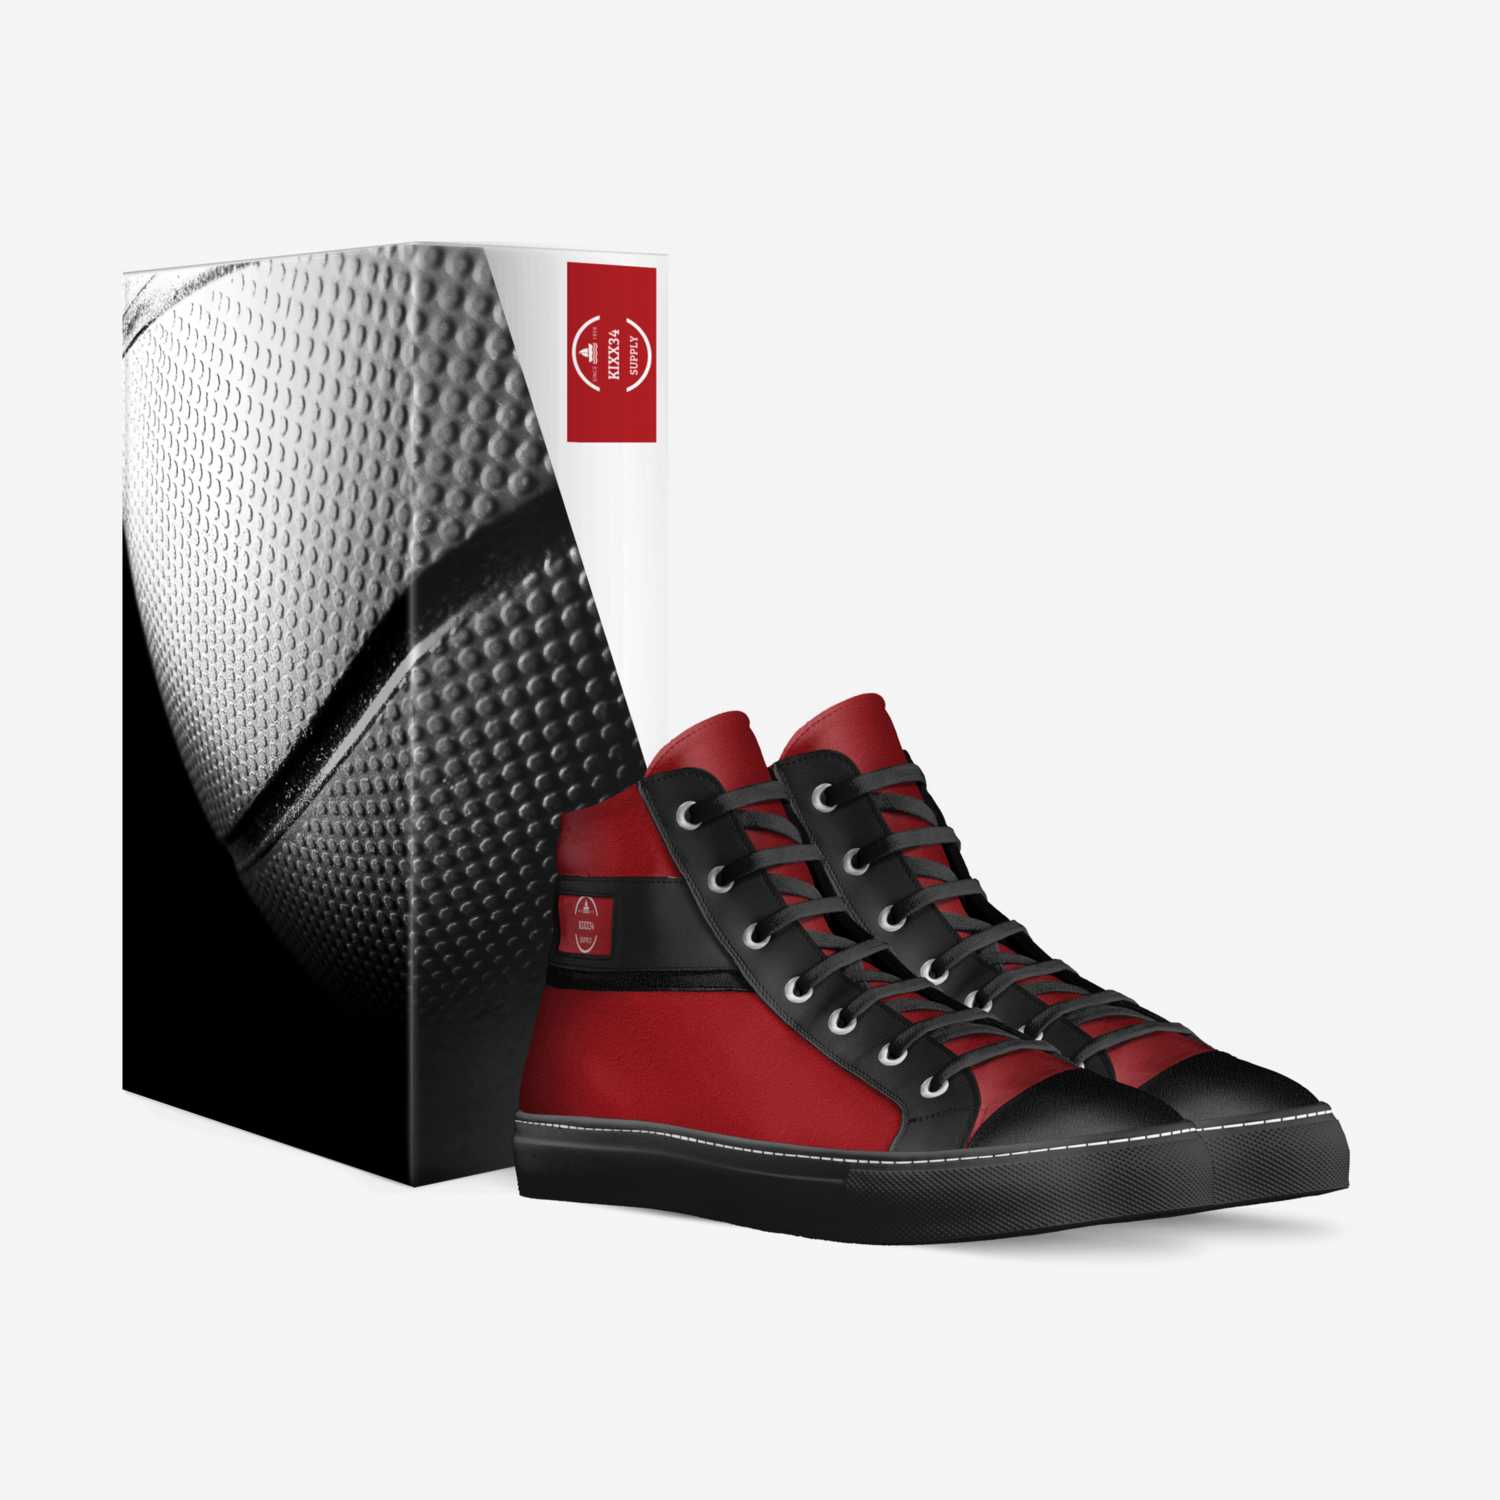 Kixx34 custom made in Italy shoes by Yolanda Jett | Box view